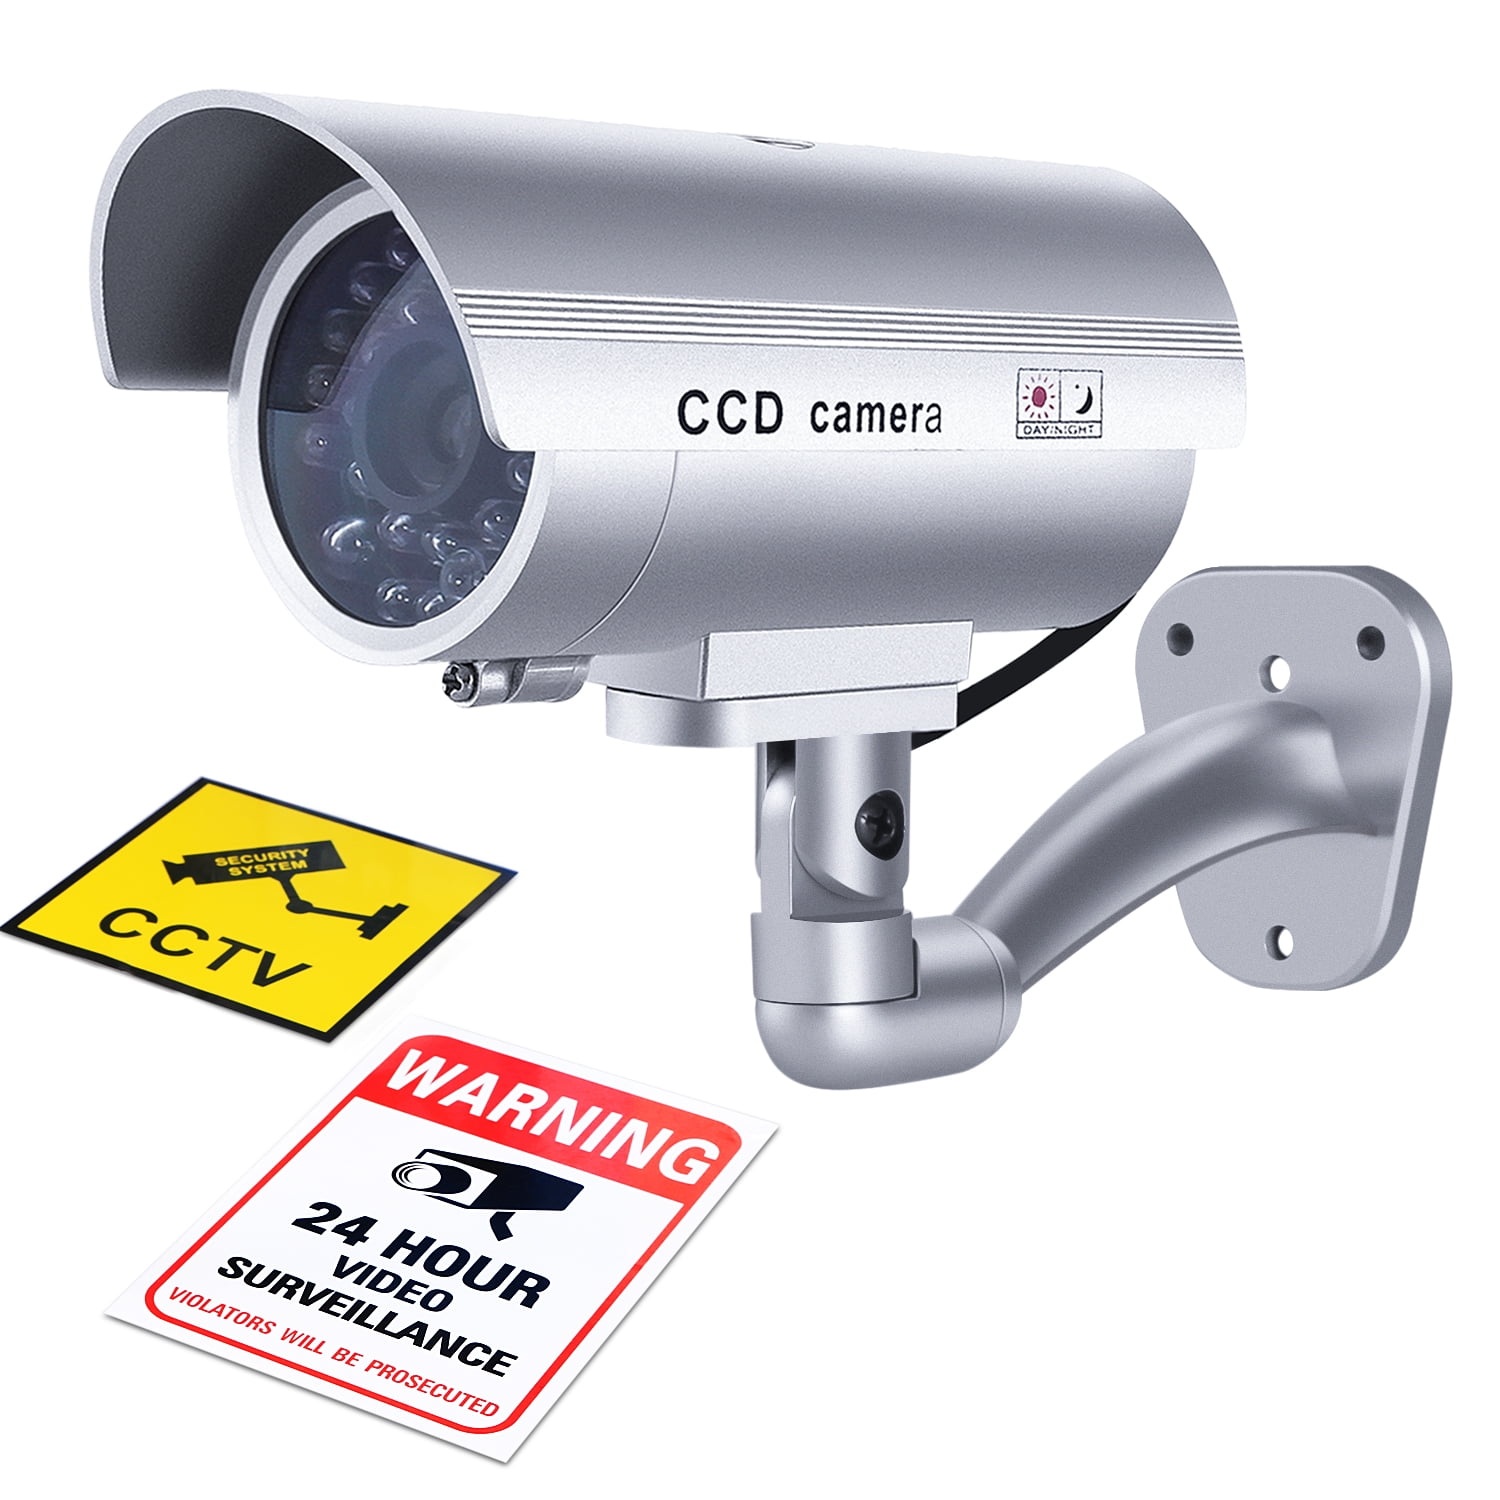 Security CCD Cameras CCTV Camera Warning Sticker 12 Lot 